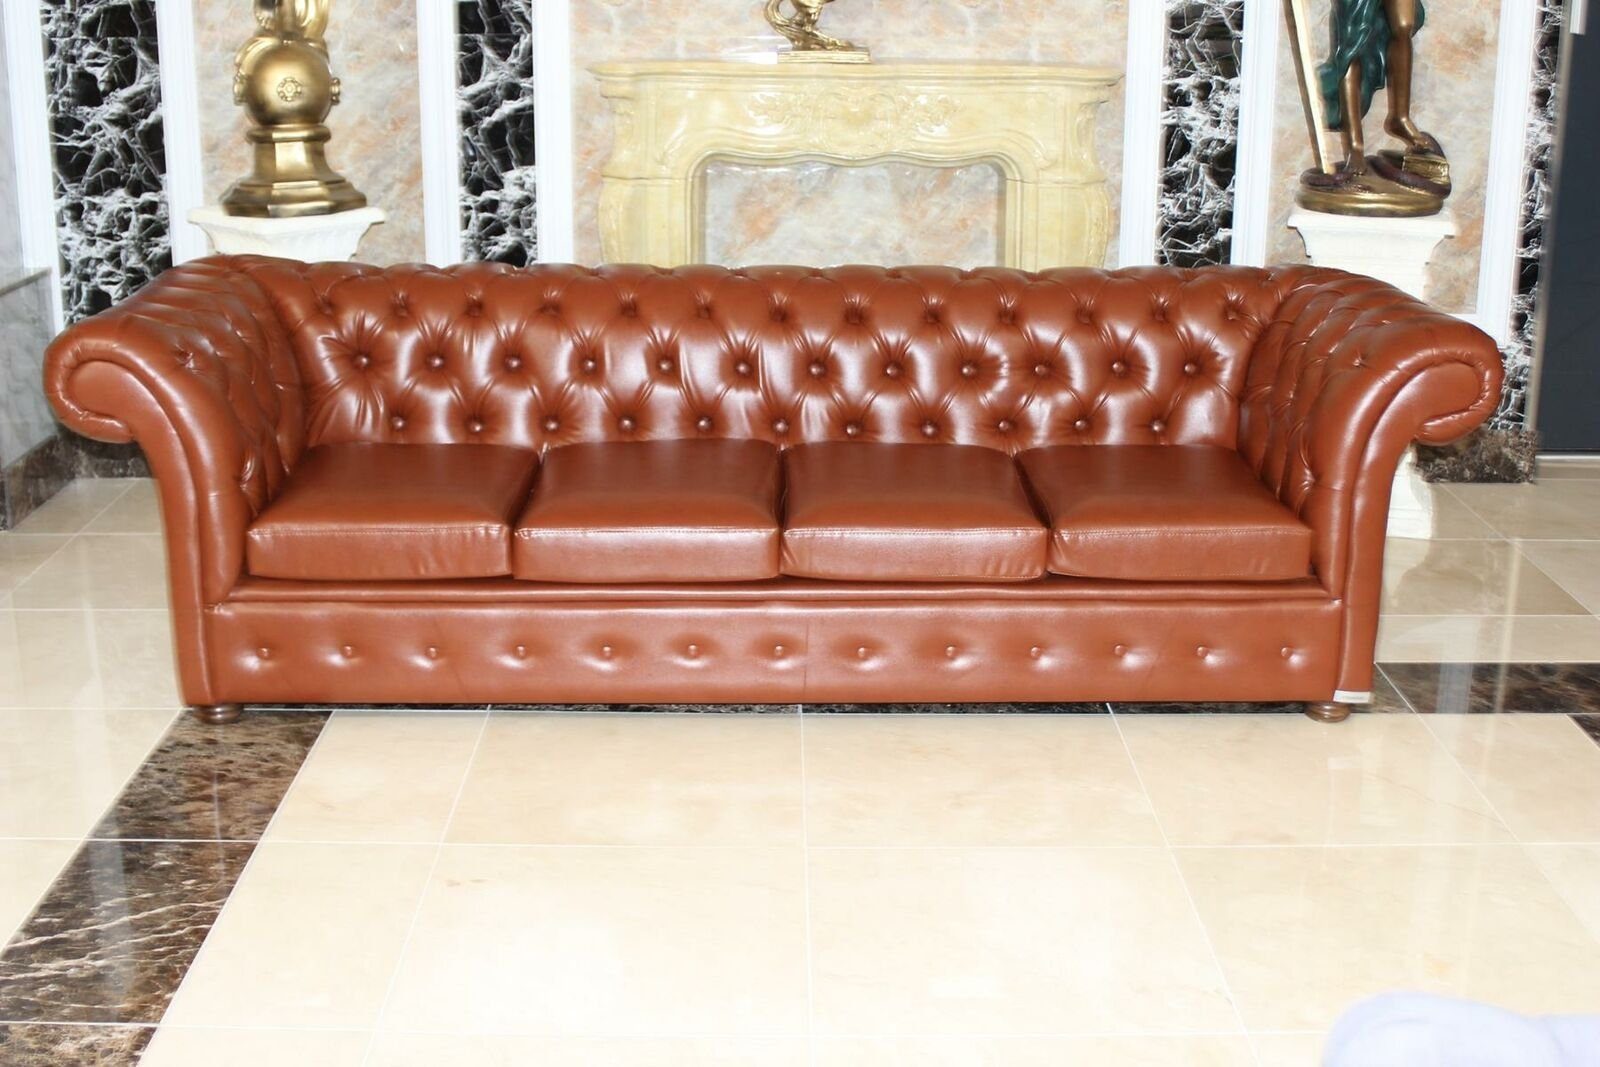 JVmoebel 4-Sitzer Sofa 4 Sitz Couch Sofas Chesterfield Viersitzer Kunstleder Sofort, 1 Teile | Einzelsofas